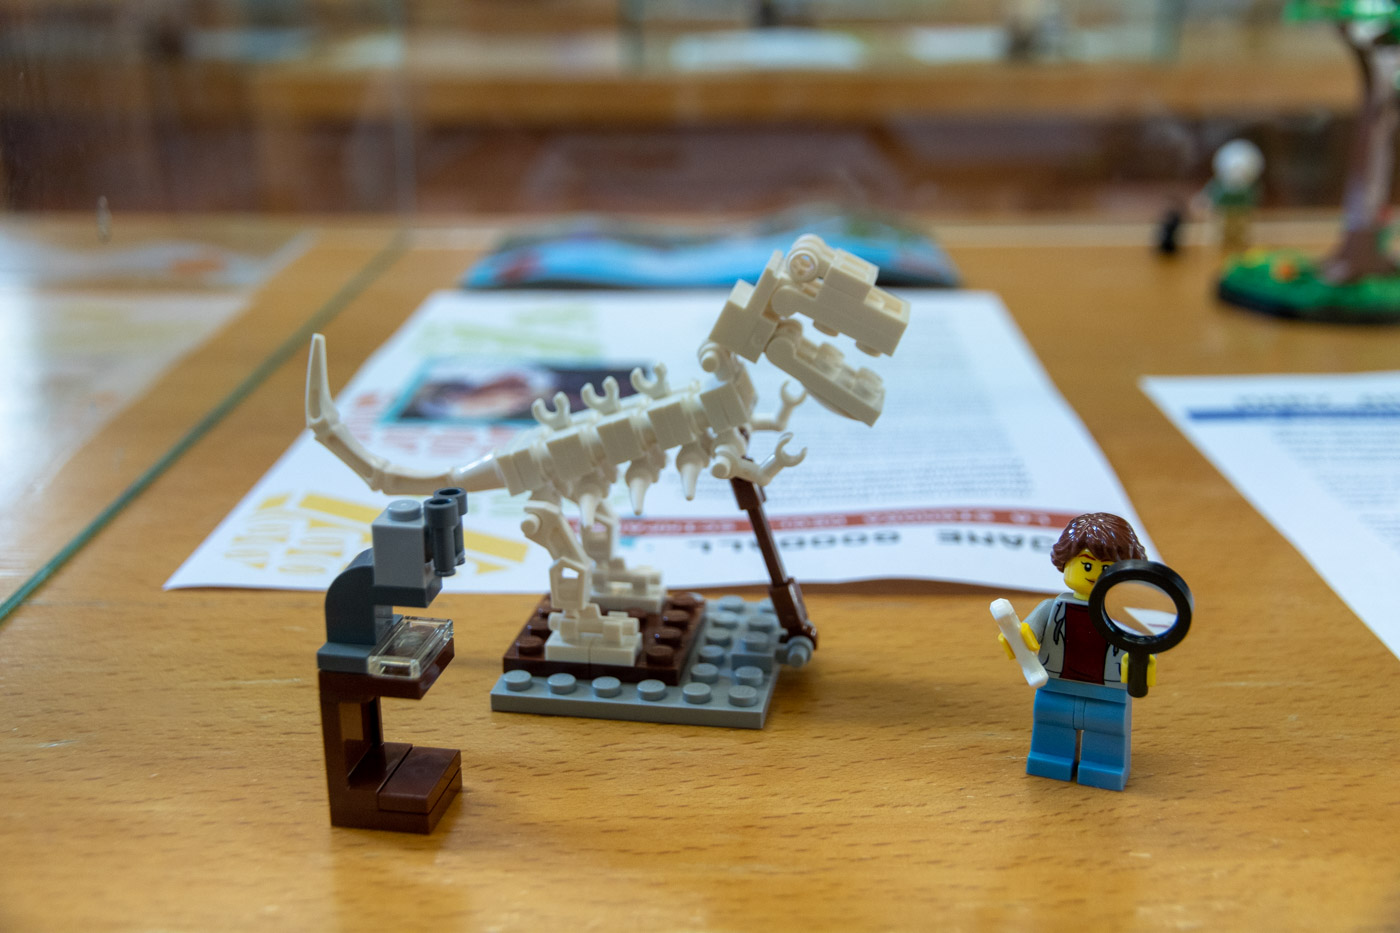 Donne e scienza”: esposizione, aperta al pubblico, di scenari scientifici  realizzati con i mattoncini Lego ®, in mostra alla Scuola Sant'Anna |  Scuola Superiore Sant'Anna